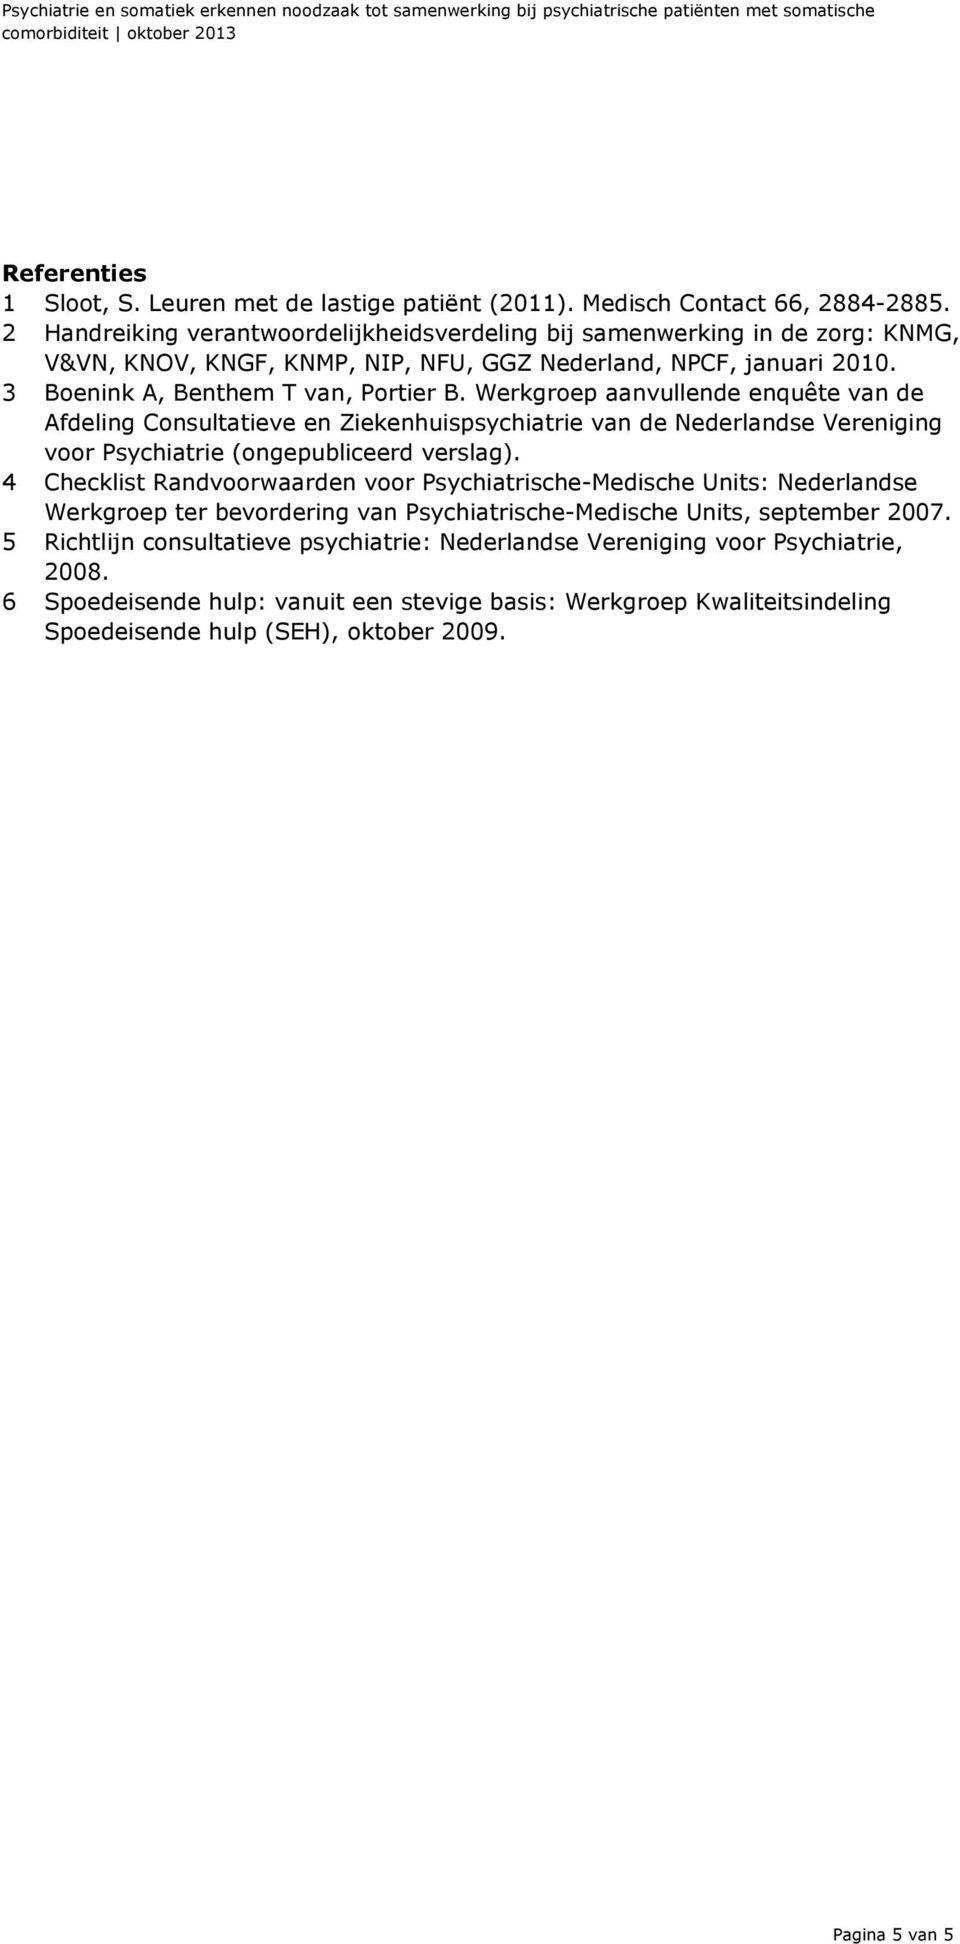 Werkgroep aanvullende enquête van de Afdeling Consultatieve en Ziekenhuispsychiatrie van de Nederlandse Vereniging voor Psychiatrie (ongepubliceerd verslag).